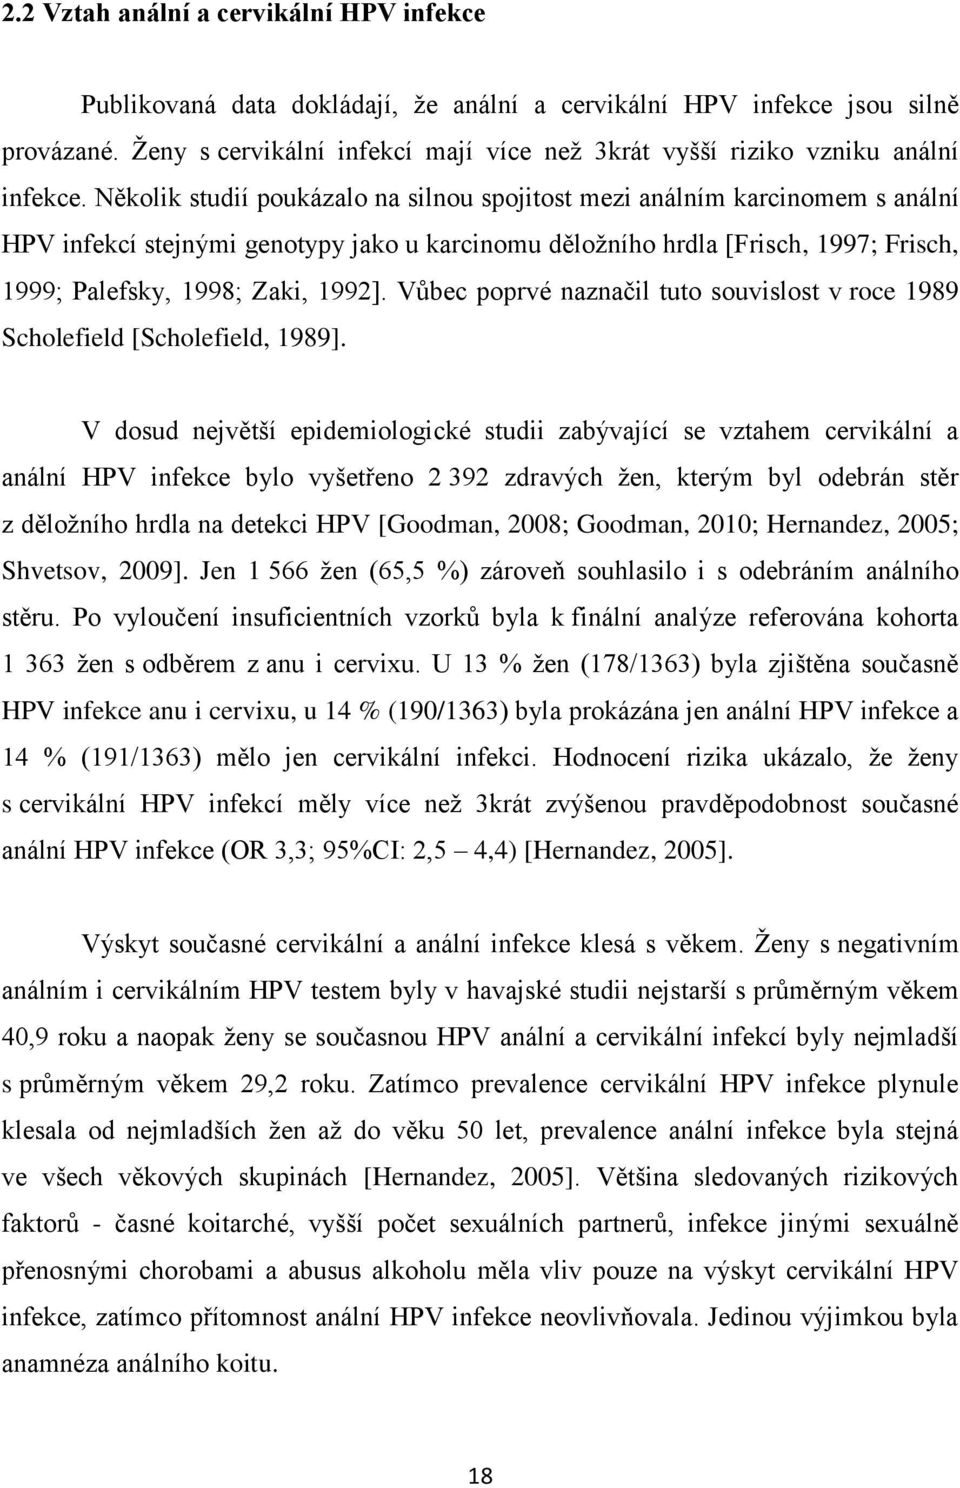 Několik studií poukázalo na silnou spojitost mezi análním karcinomem s anální HPV infekcí stejnými genotypy jako u karcinomu děložního hrdla [Frisch, 1997; Frisch, 1999; Palefsky, 1998; Zaki, 1992].